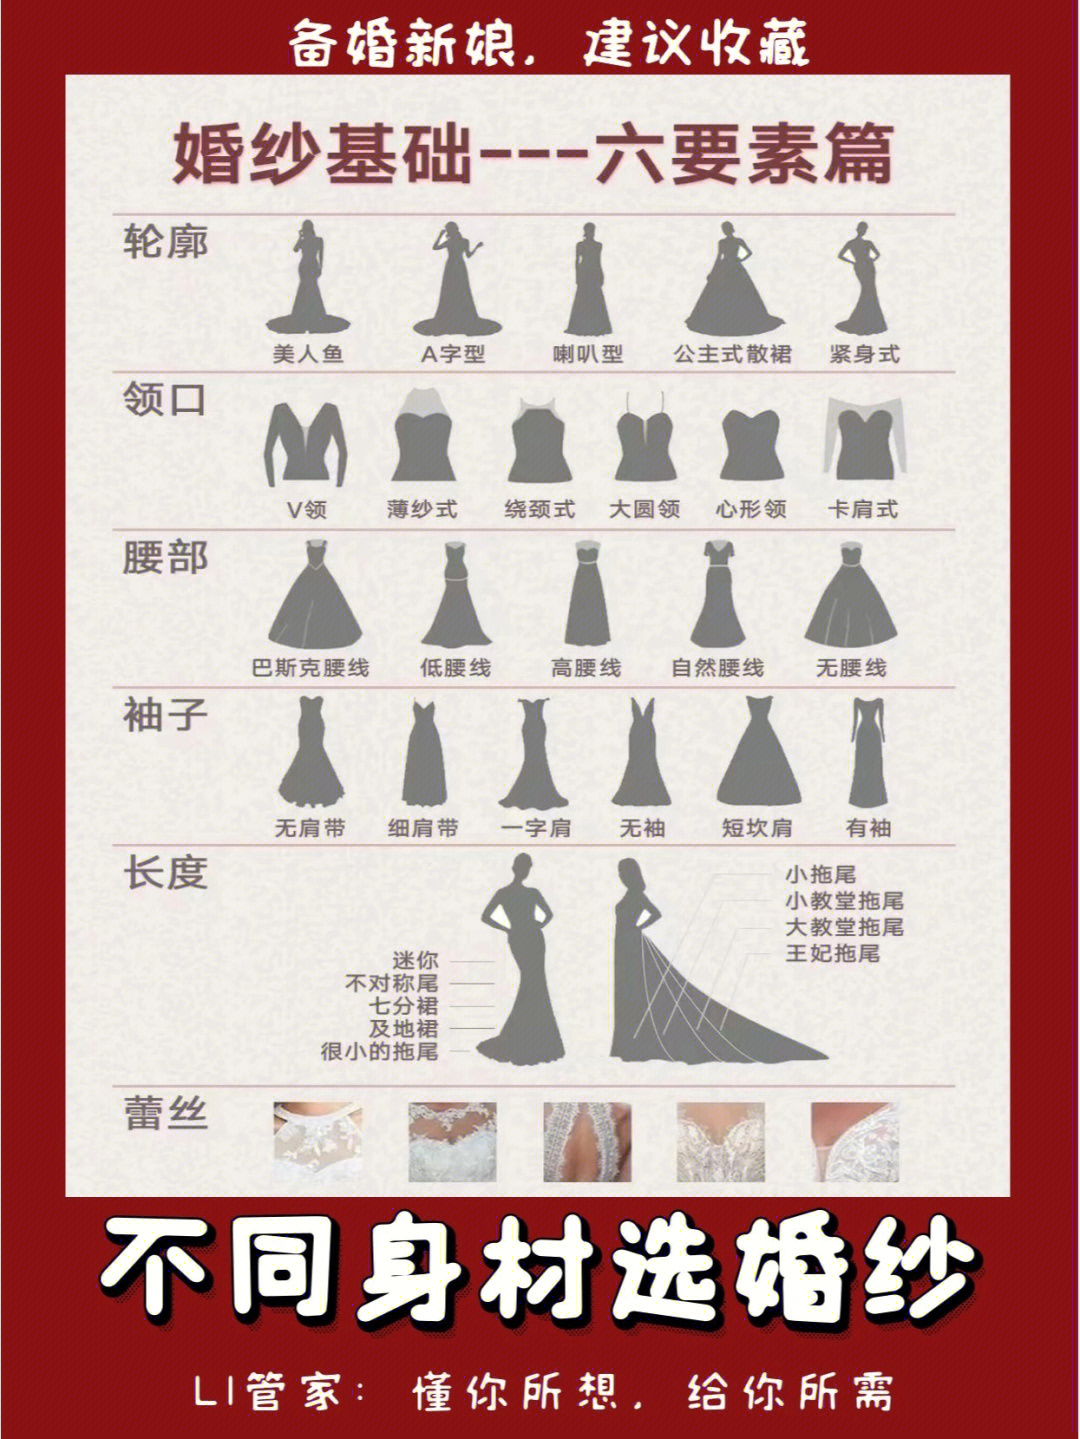 婚纱类型 分类图片